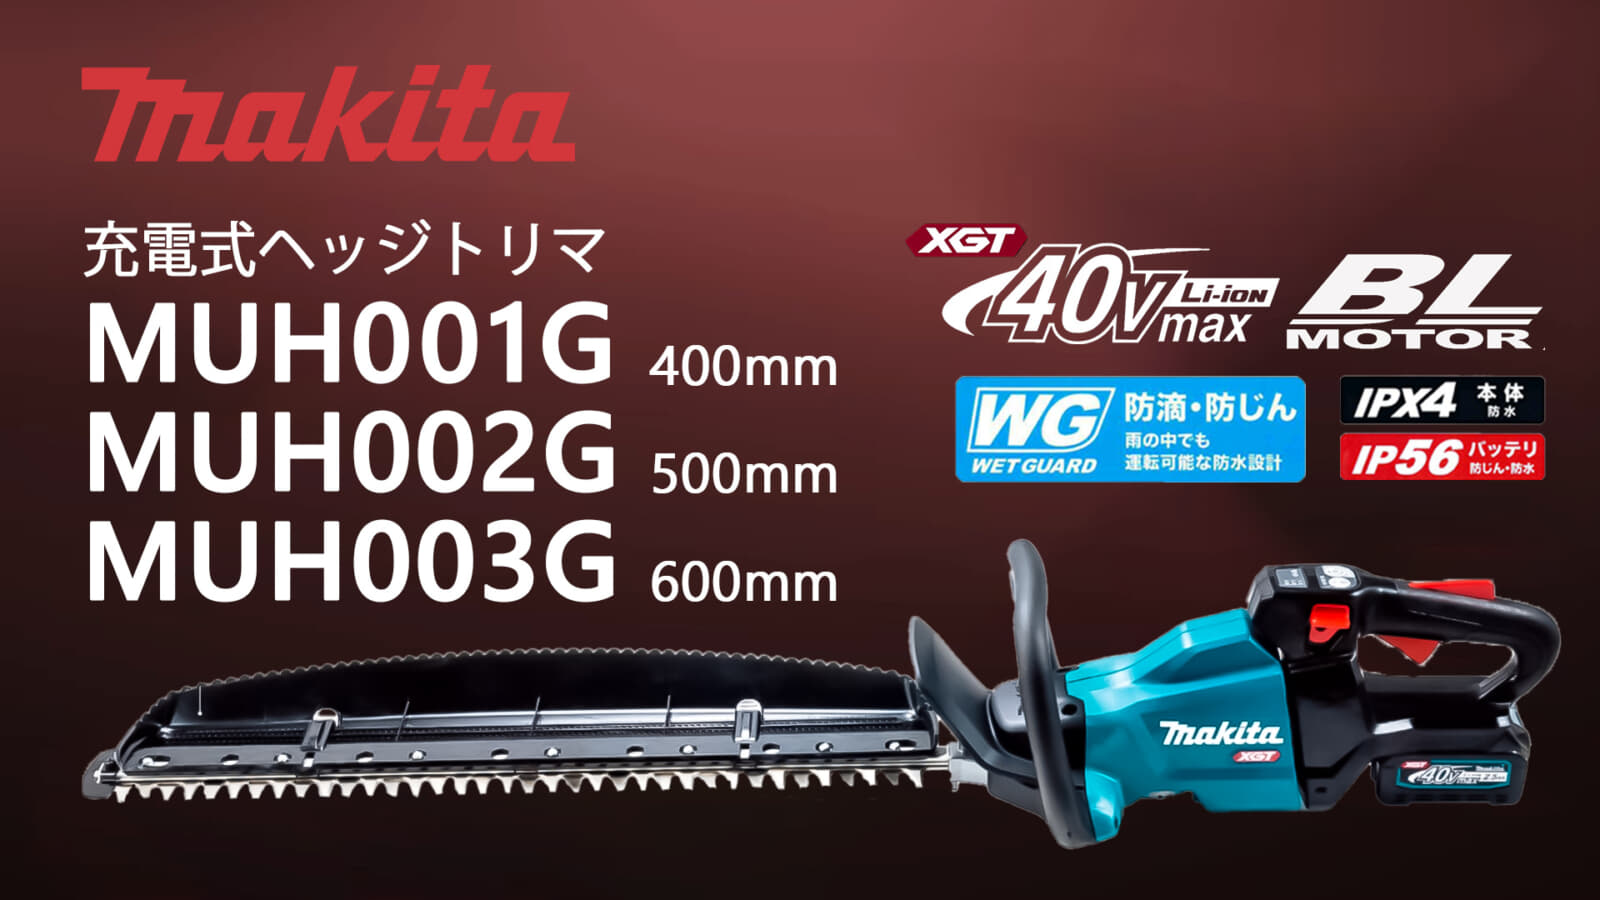 マキタ MUH001Gシリーズ 充電式ヘッジトリマを発売、40Vmaxシリーズ初のヘッジトリマ